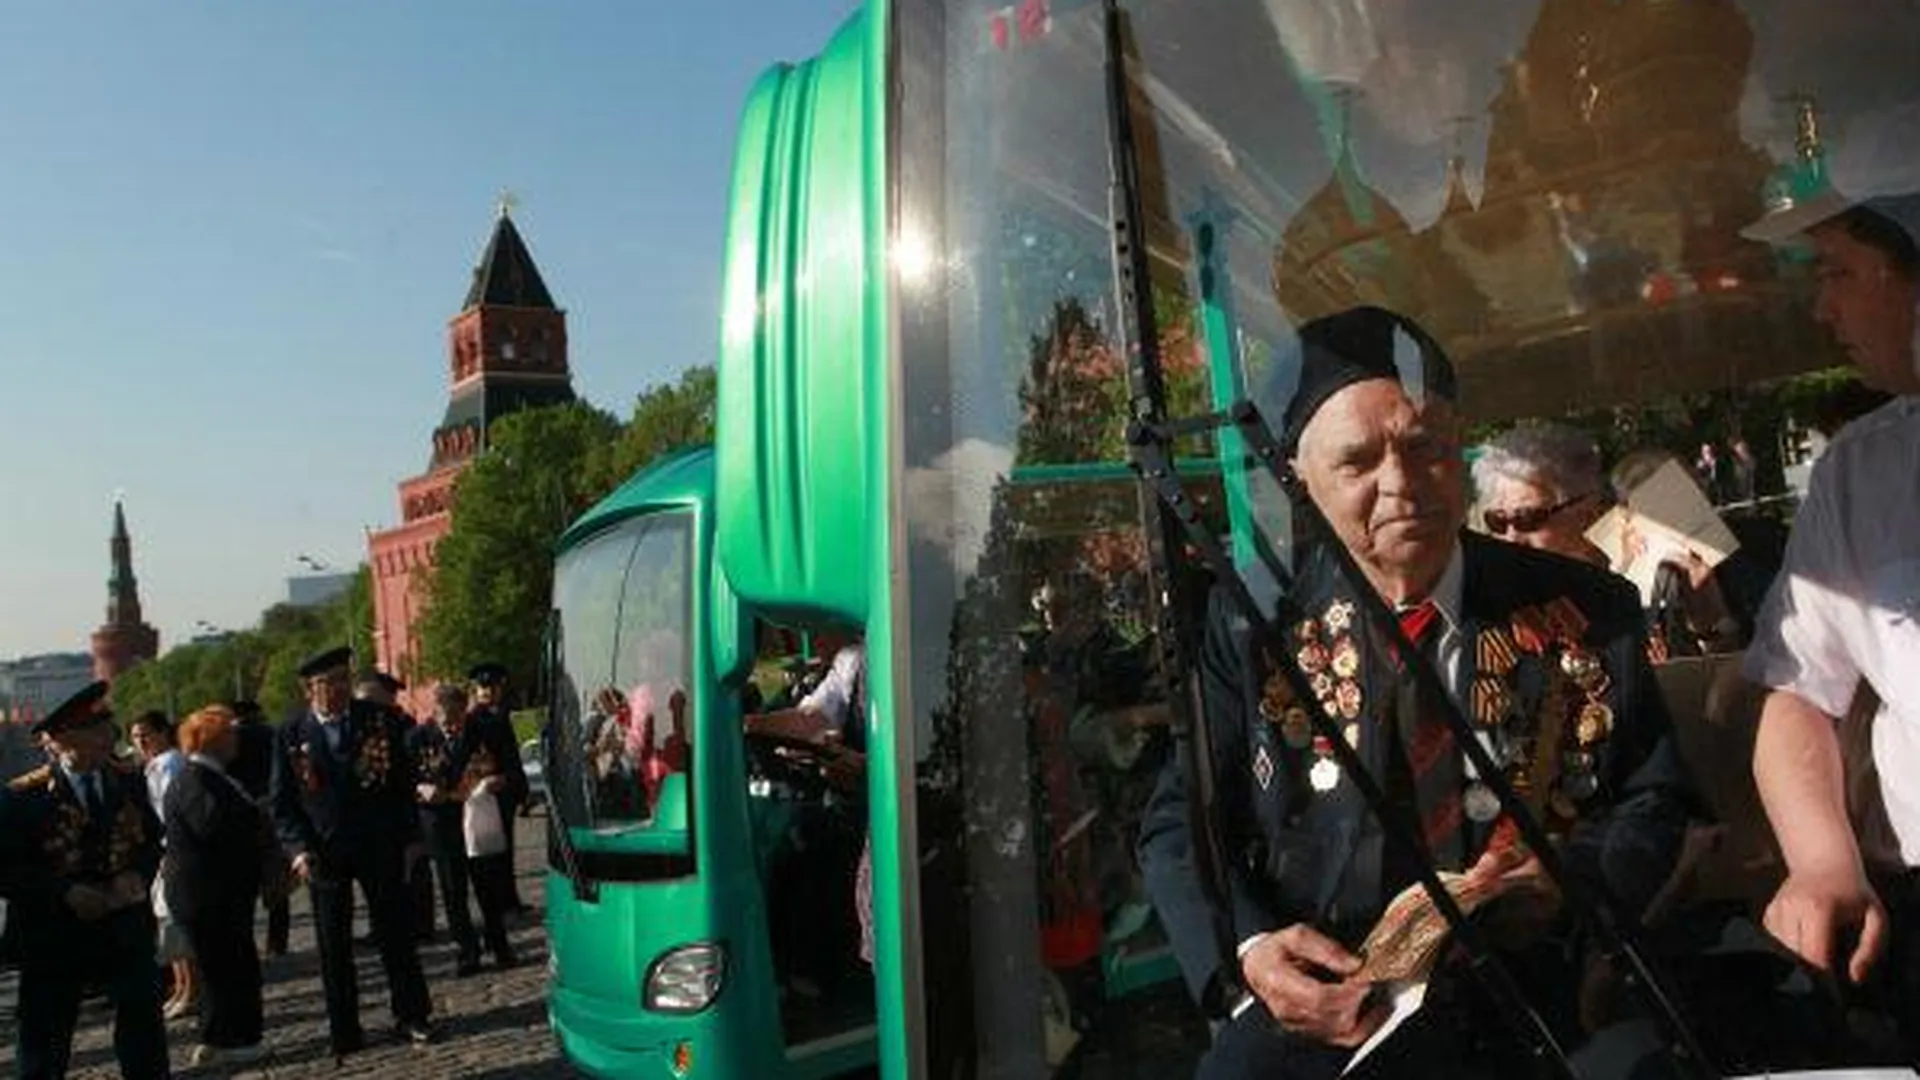 Экскурсию по городу организуют для ветеранов Серпухова 29 апреля